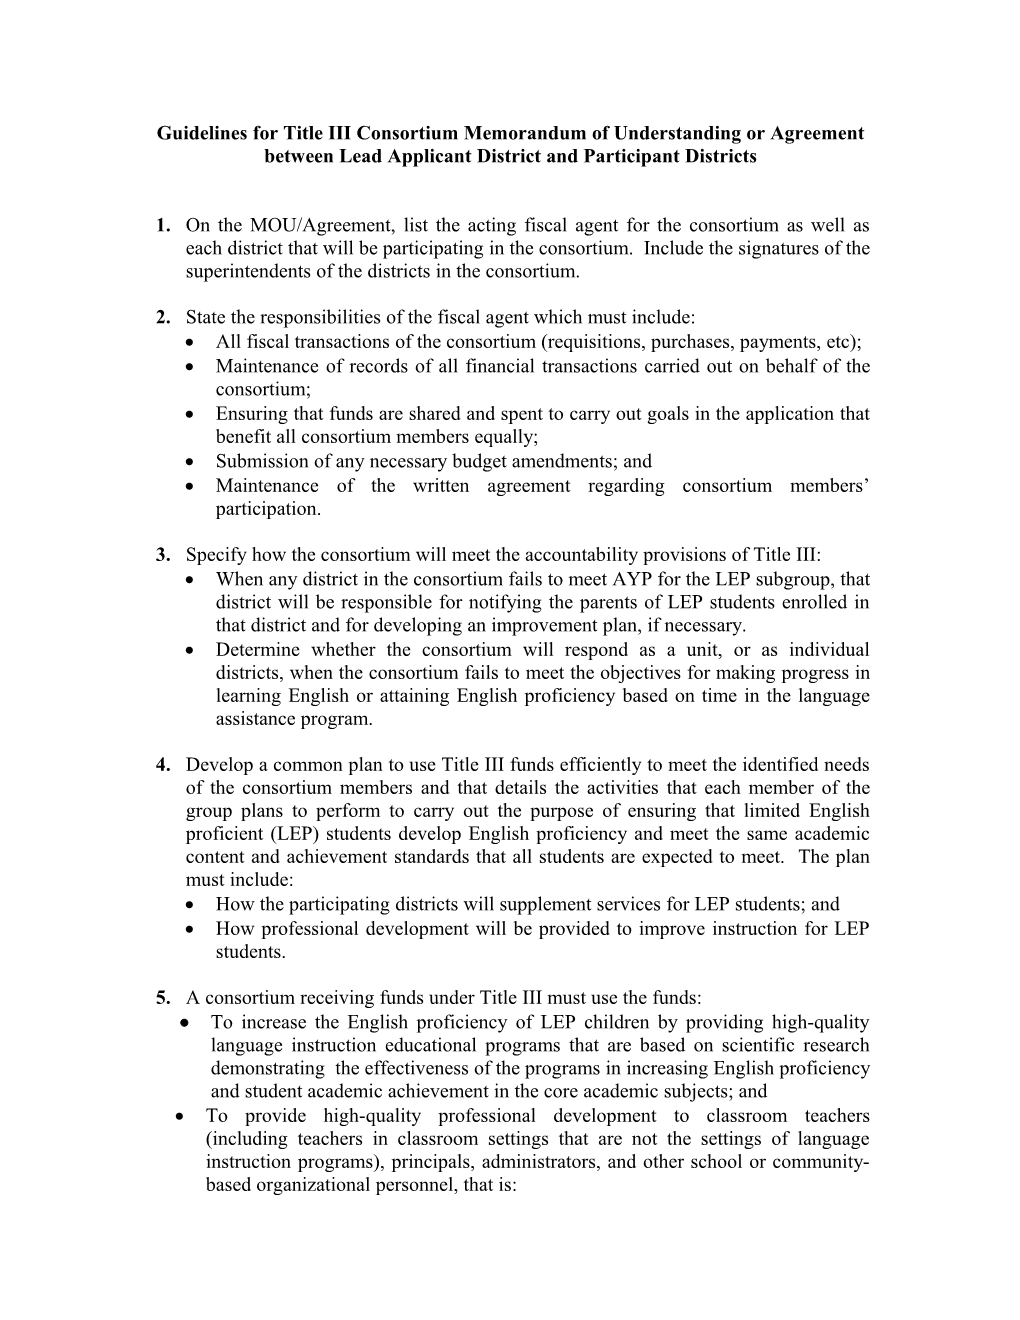 Guidelines for Title III Consortium Memorandum of Understanding Or Agreement Between Lead